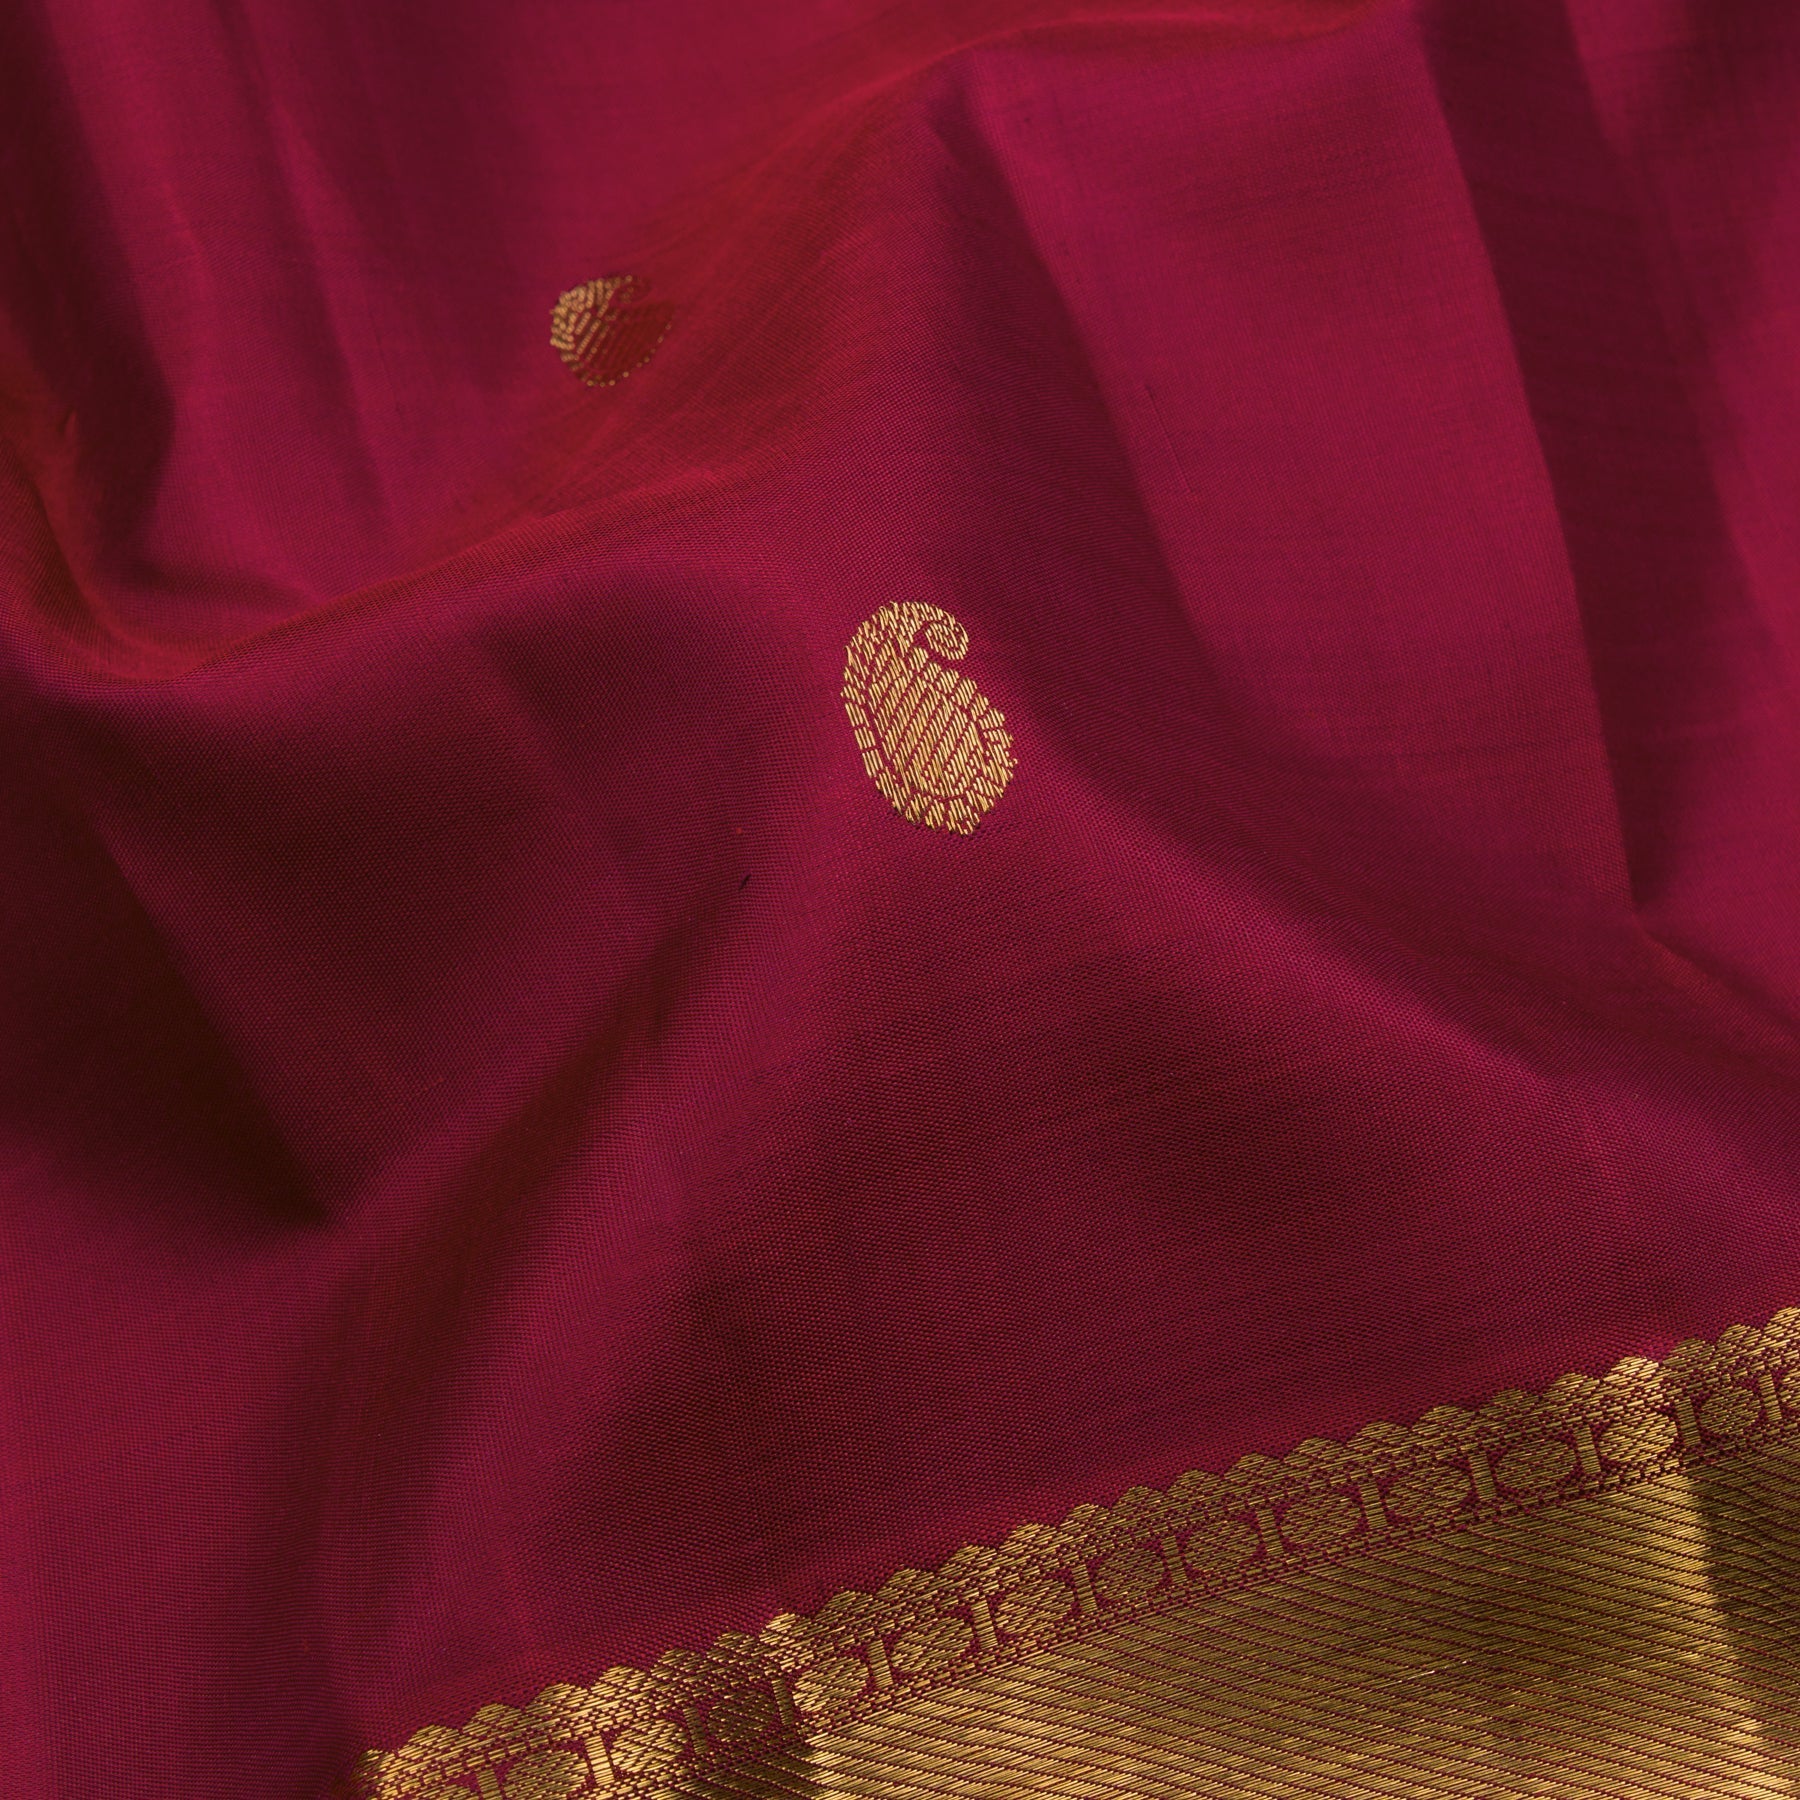 Kanakavalli Kanjivaram Silk Sari 23-595-HS001-02896 - Fabric View